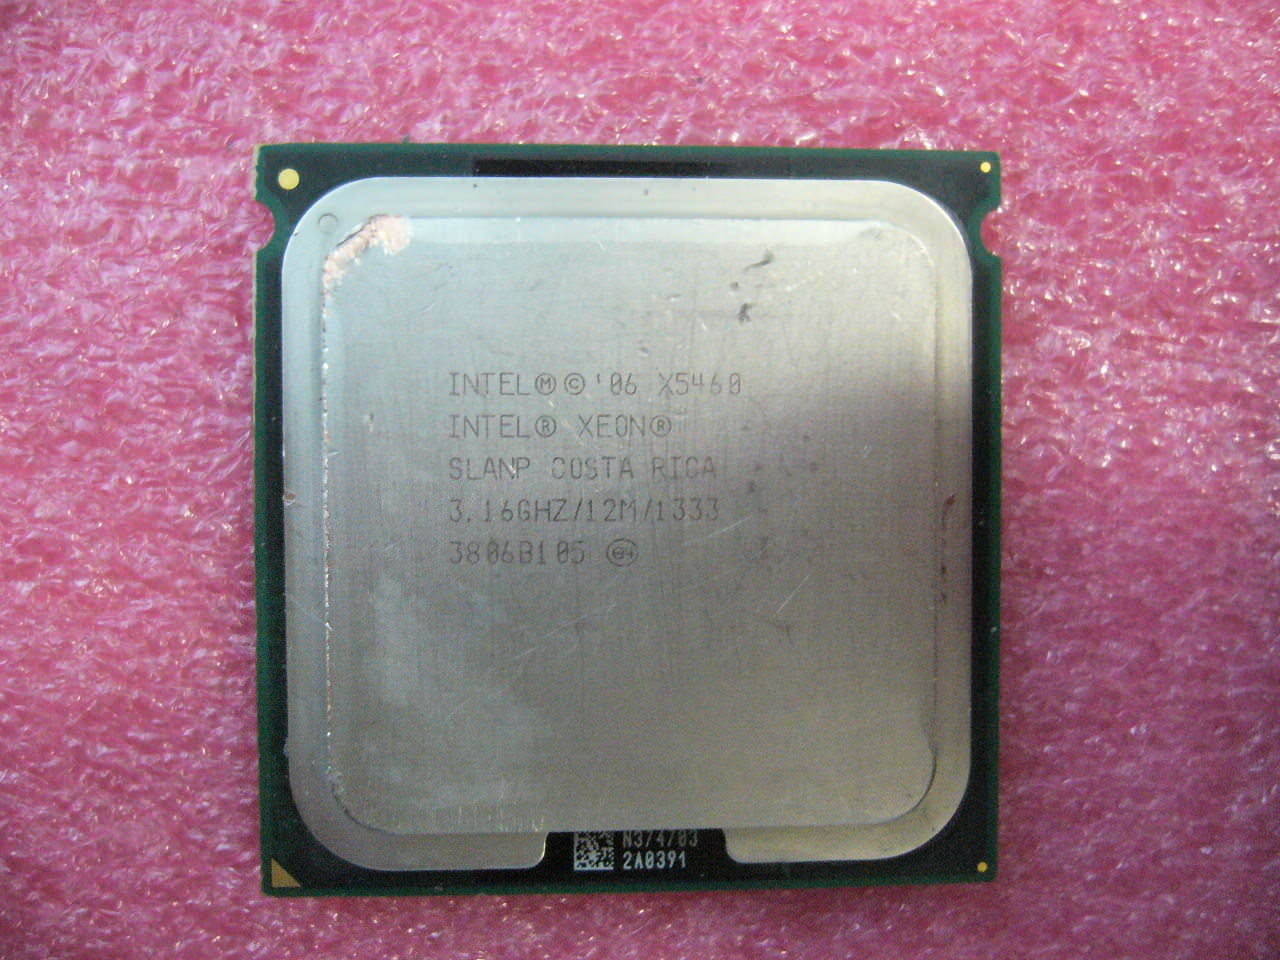 QTY 1x Intel Xeon CPU Quad Core X5460 3.16Ghz/12MB/1333Mhz LGA771 SLANP - Click Image to Close